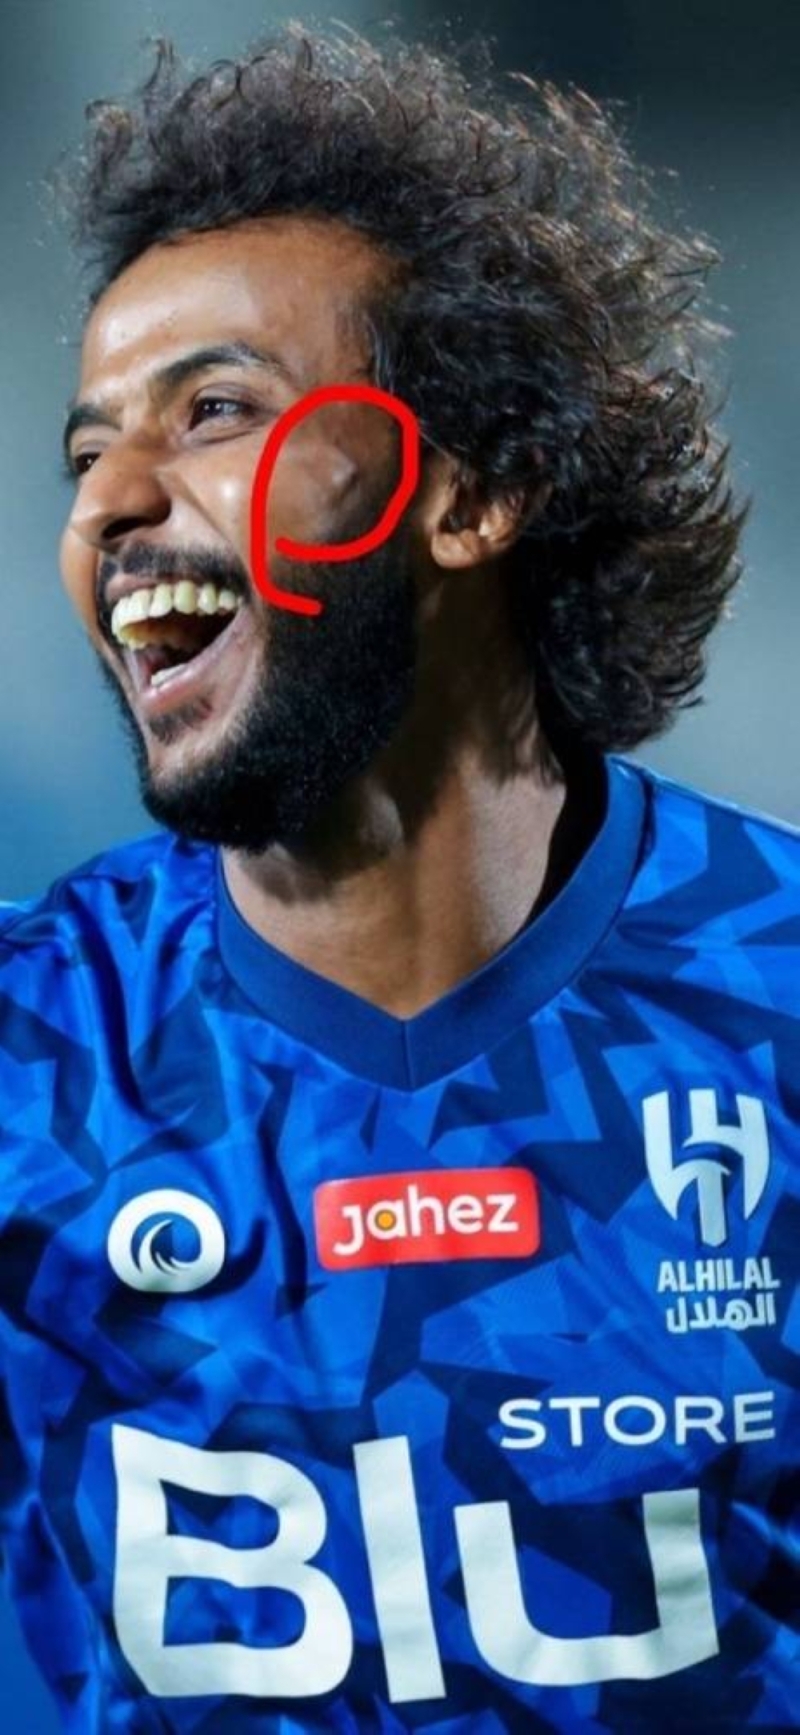 شاهد.. ظهور علامة "نتوء" في وجه لاعب الهلال " ياسر الشهراني" تُثير التساؤلات